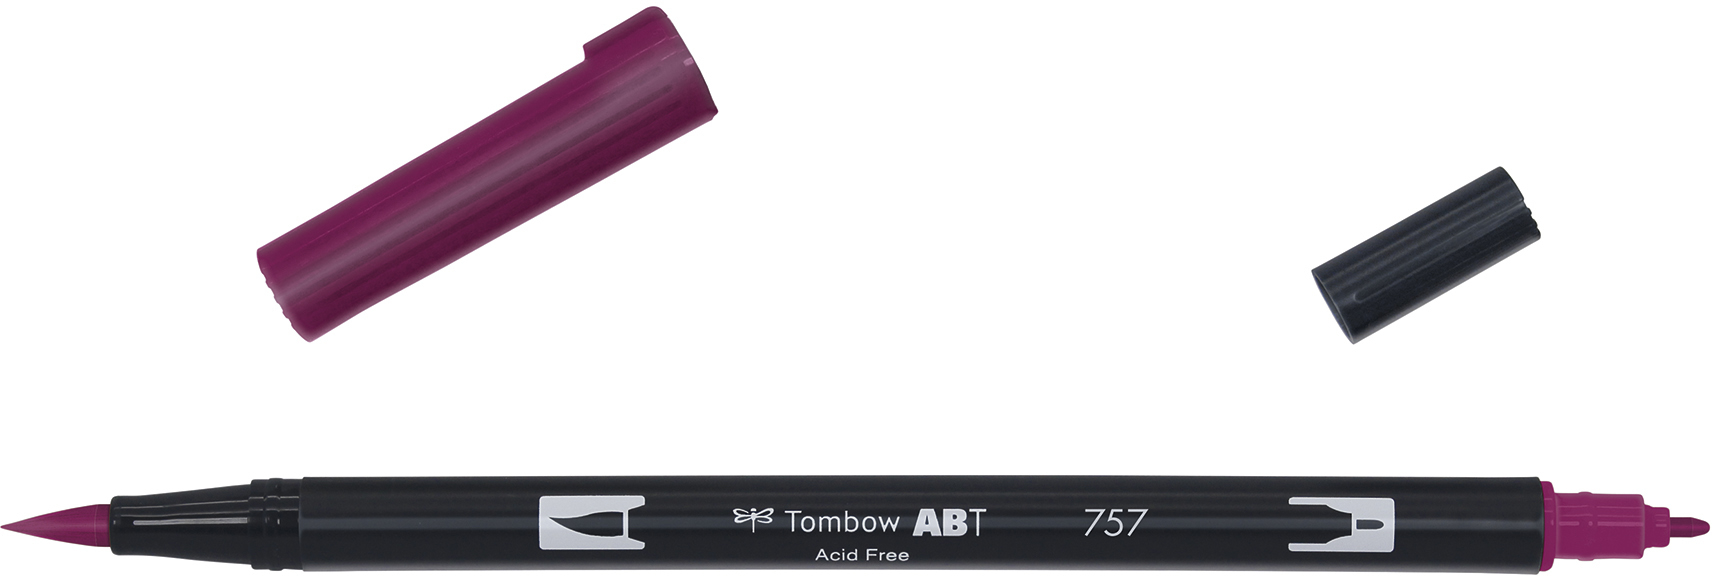 TOMBOW Dual Brush Pen ABT 757 bordeaux bordeaux